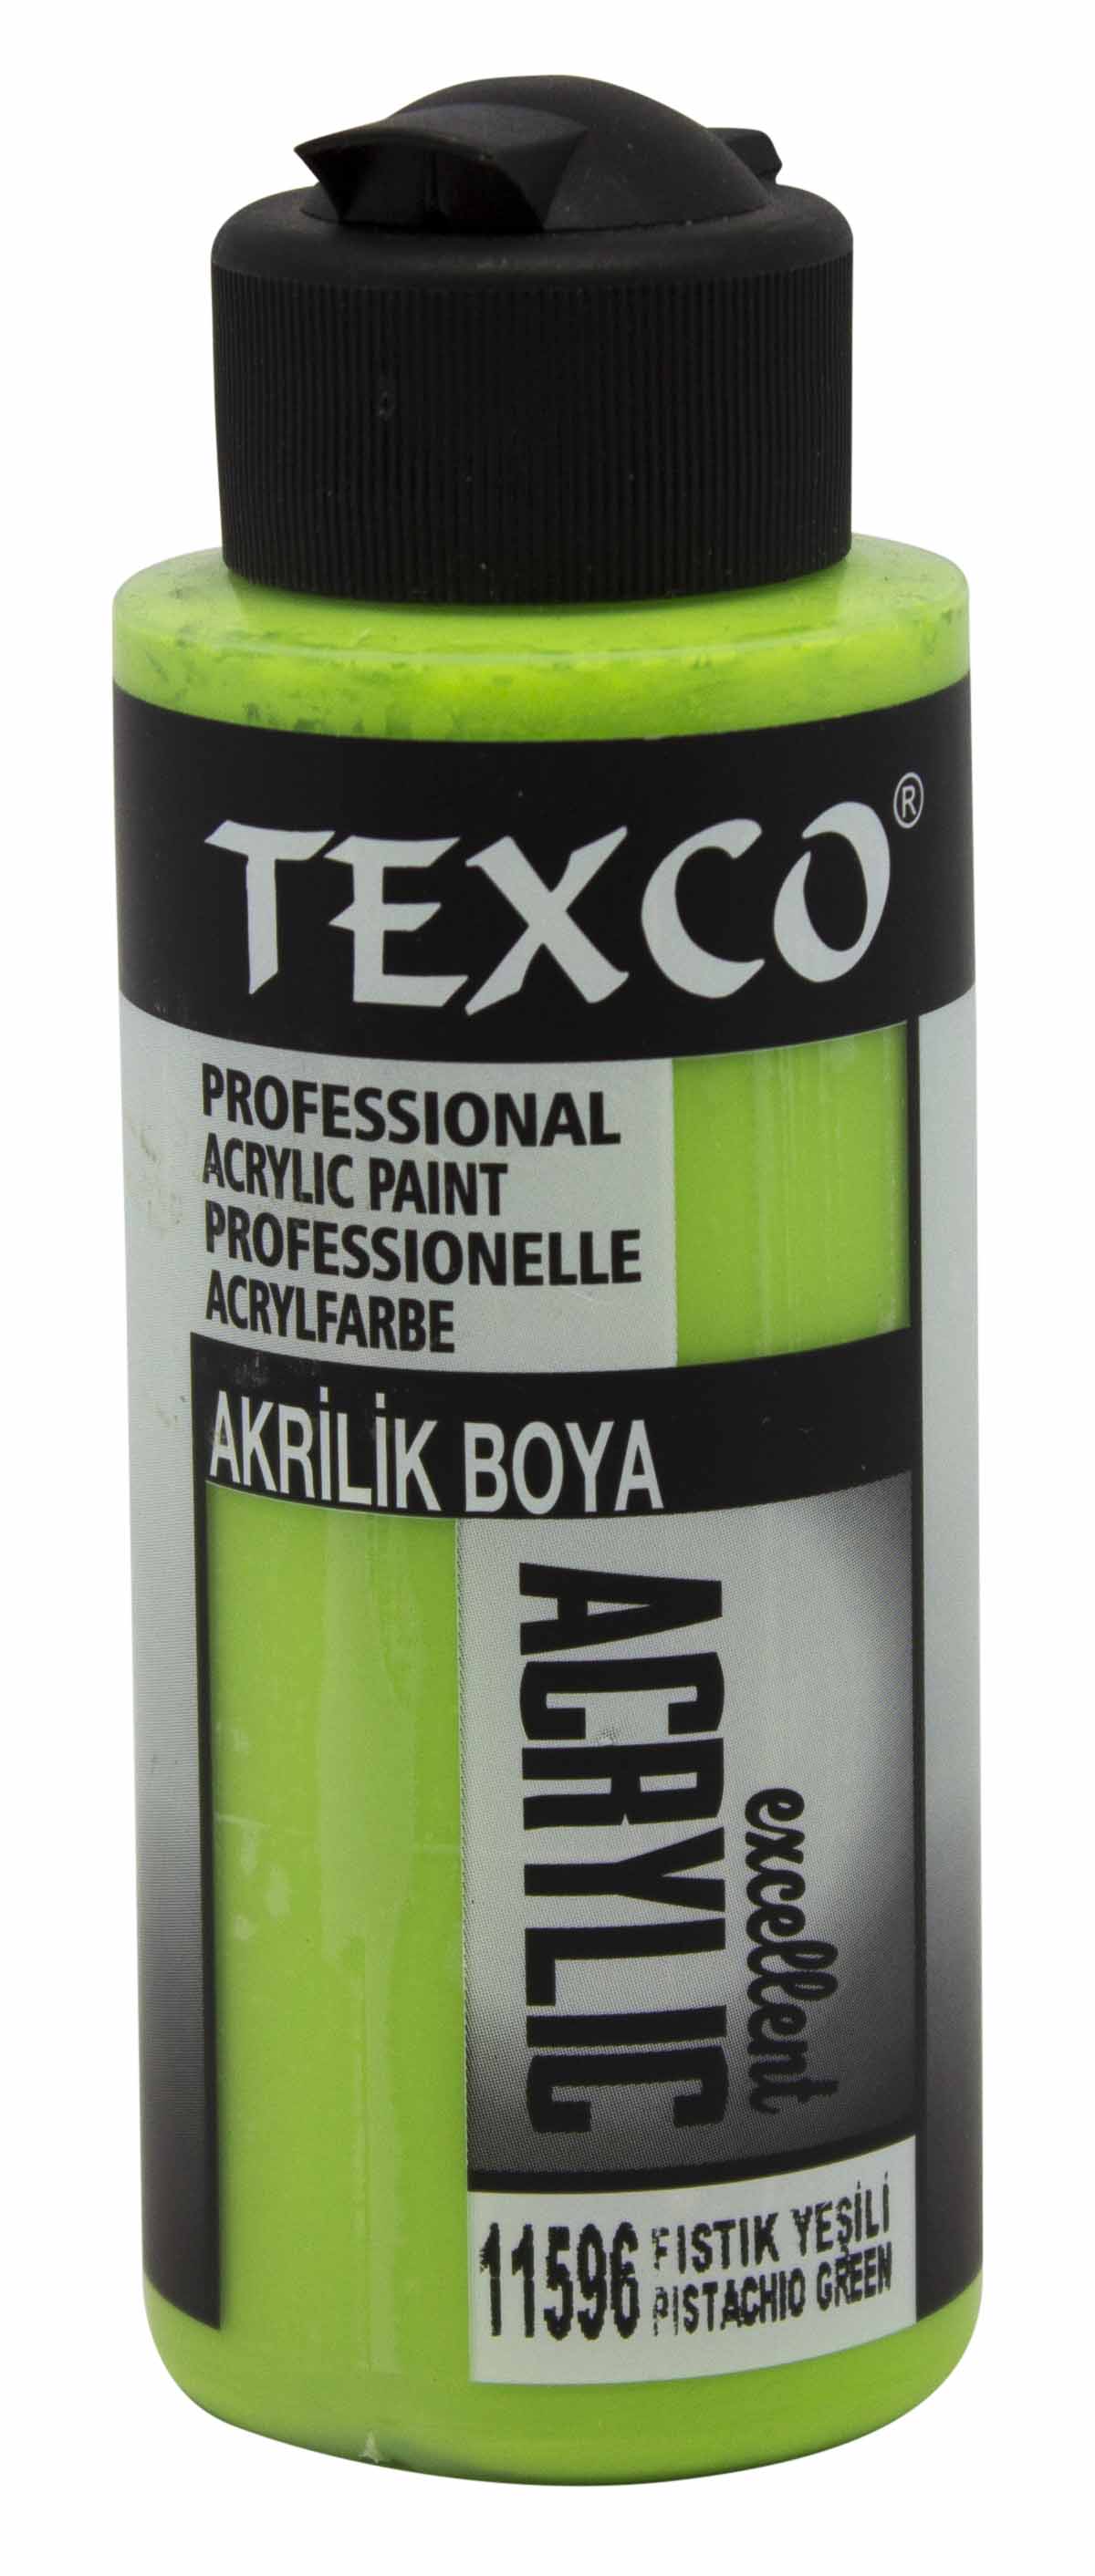 Texco Excellent Akrilik Boya 11596-Fıstık Yeşili 110 cc